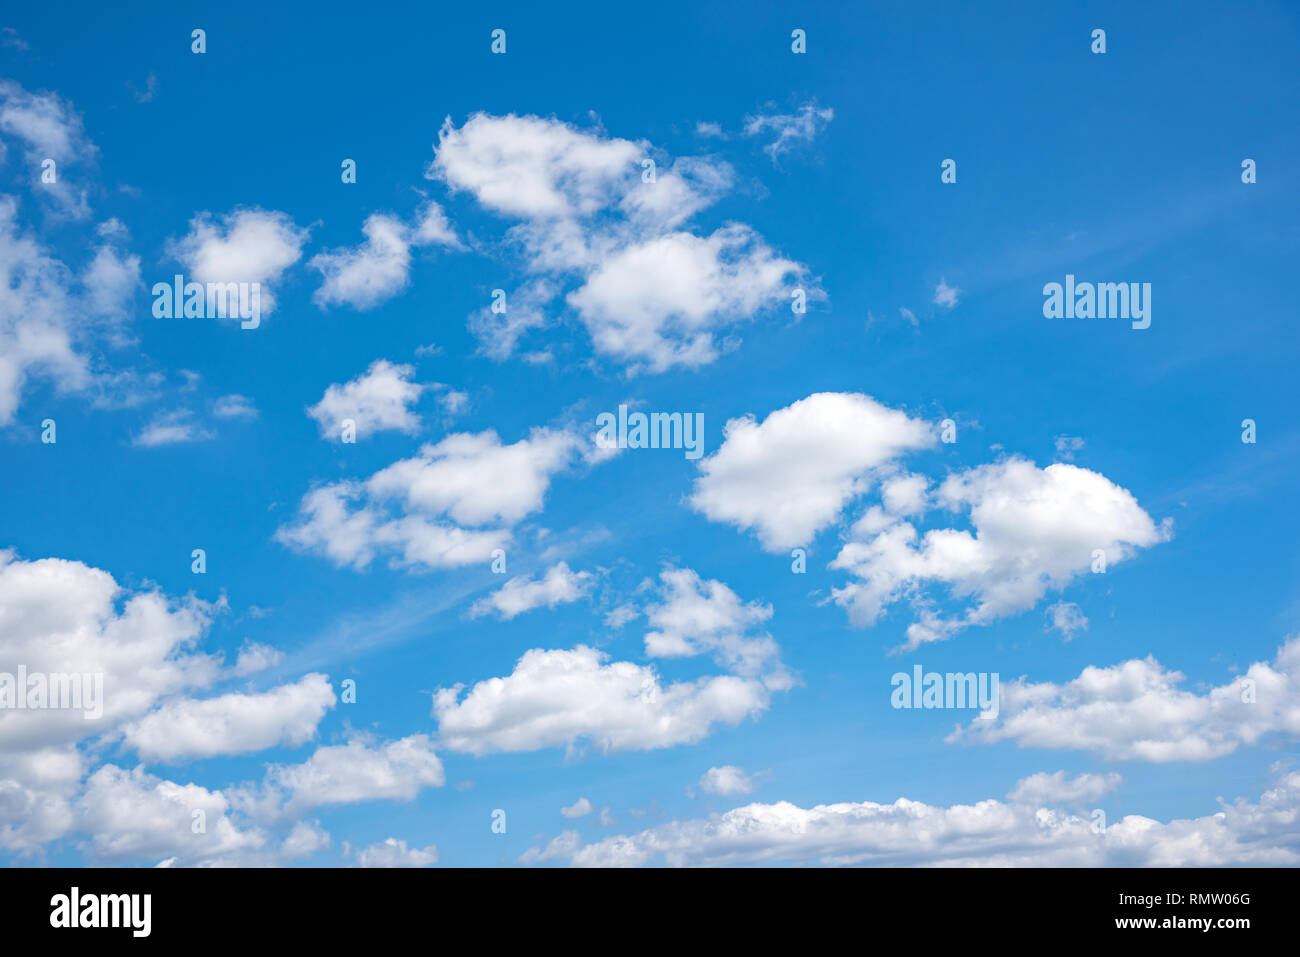 El cielo azul con nubes blancas. Foto de stock